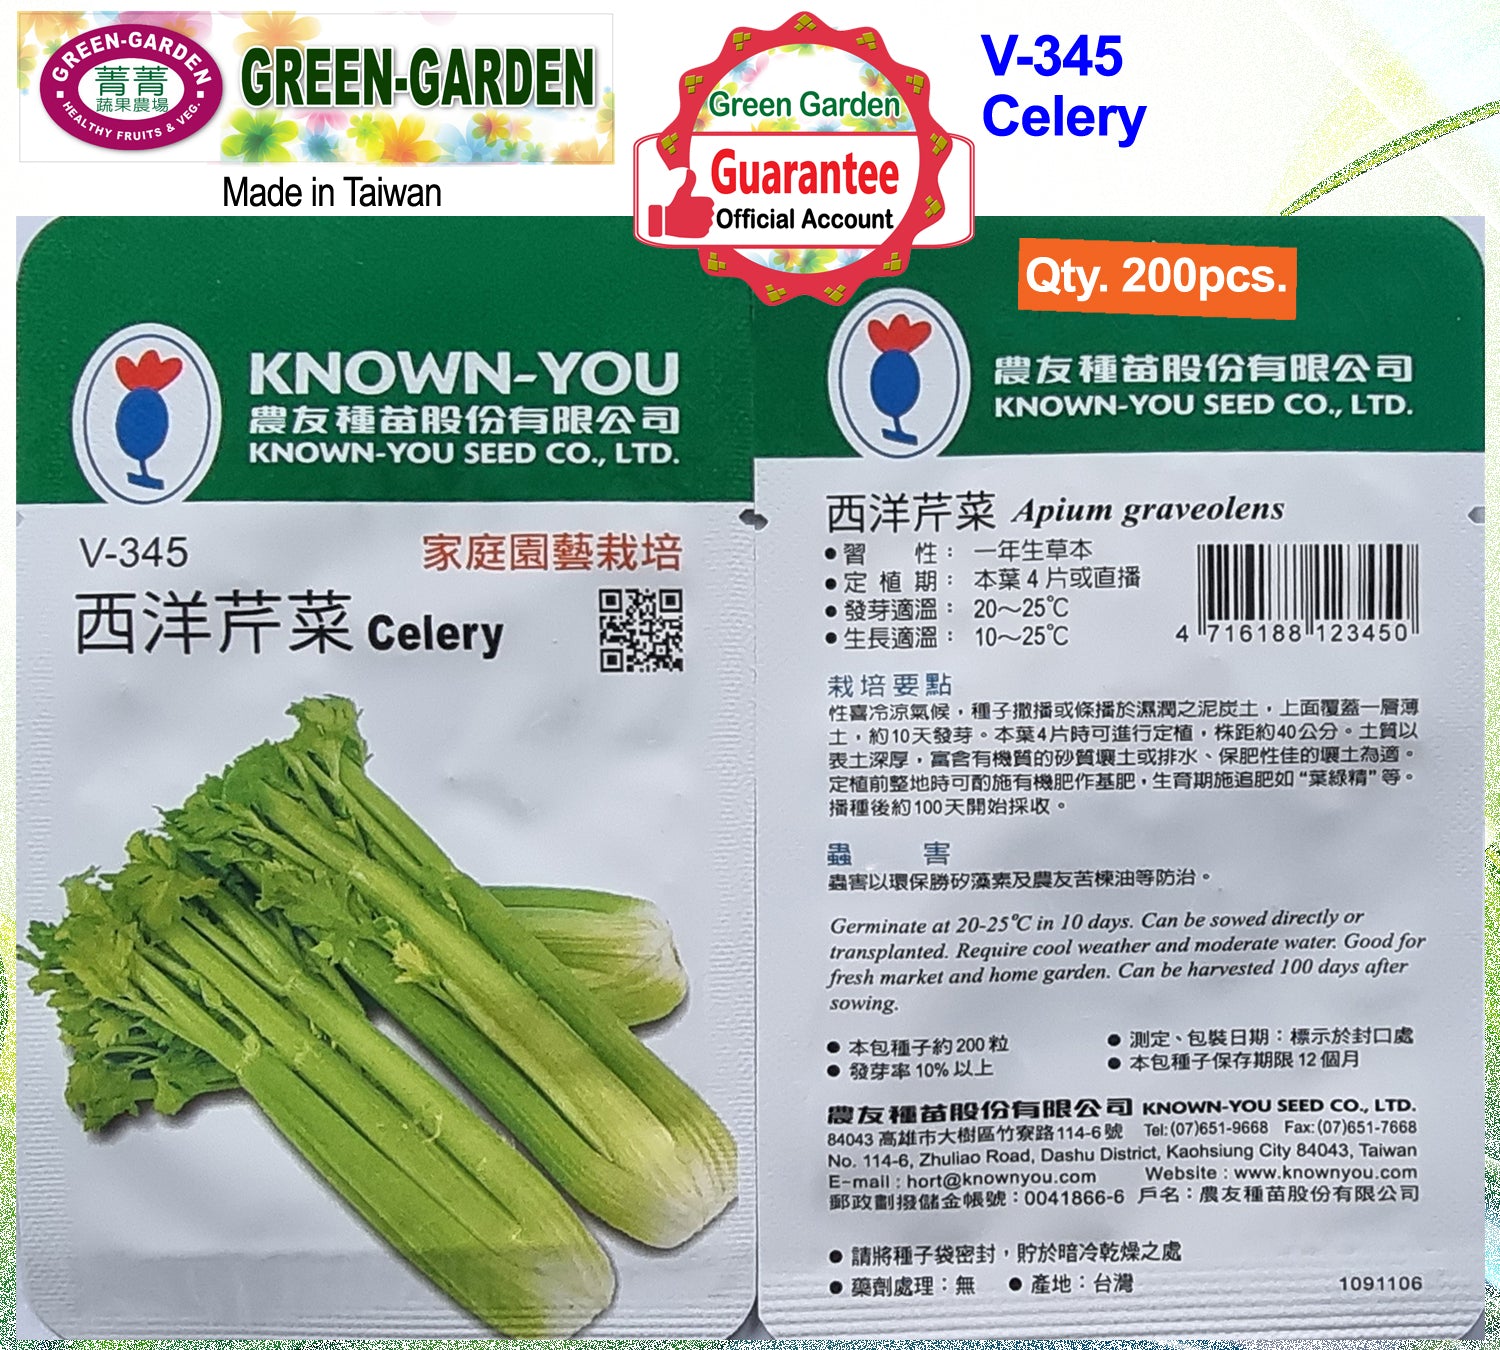 Known You Vegetable Seeds (V-345 Celery)